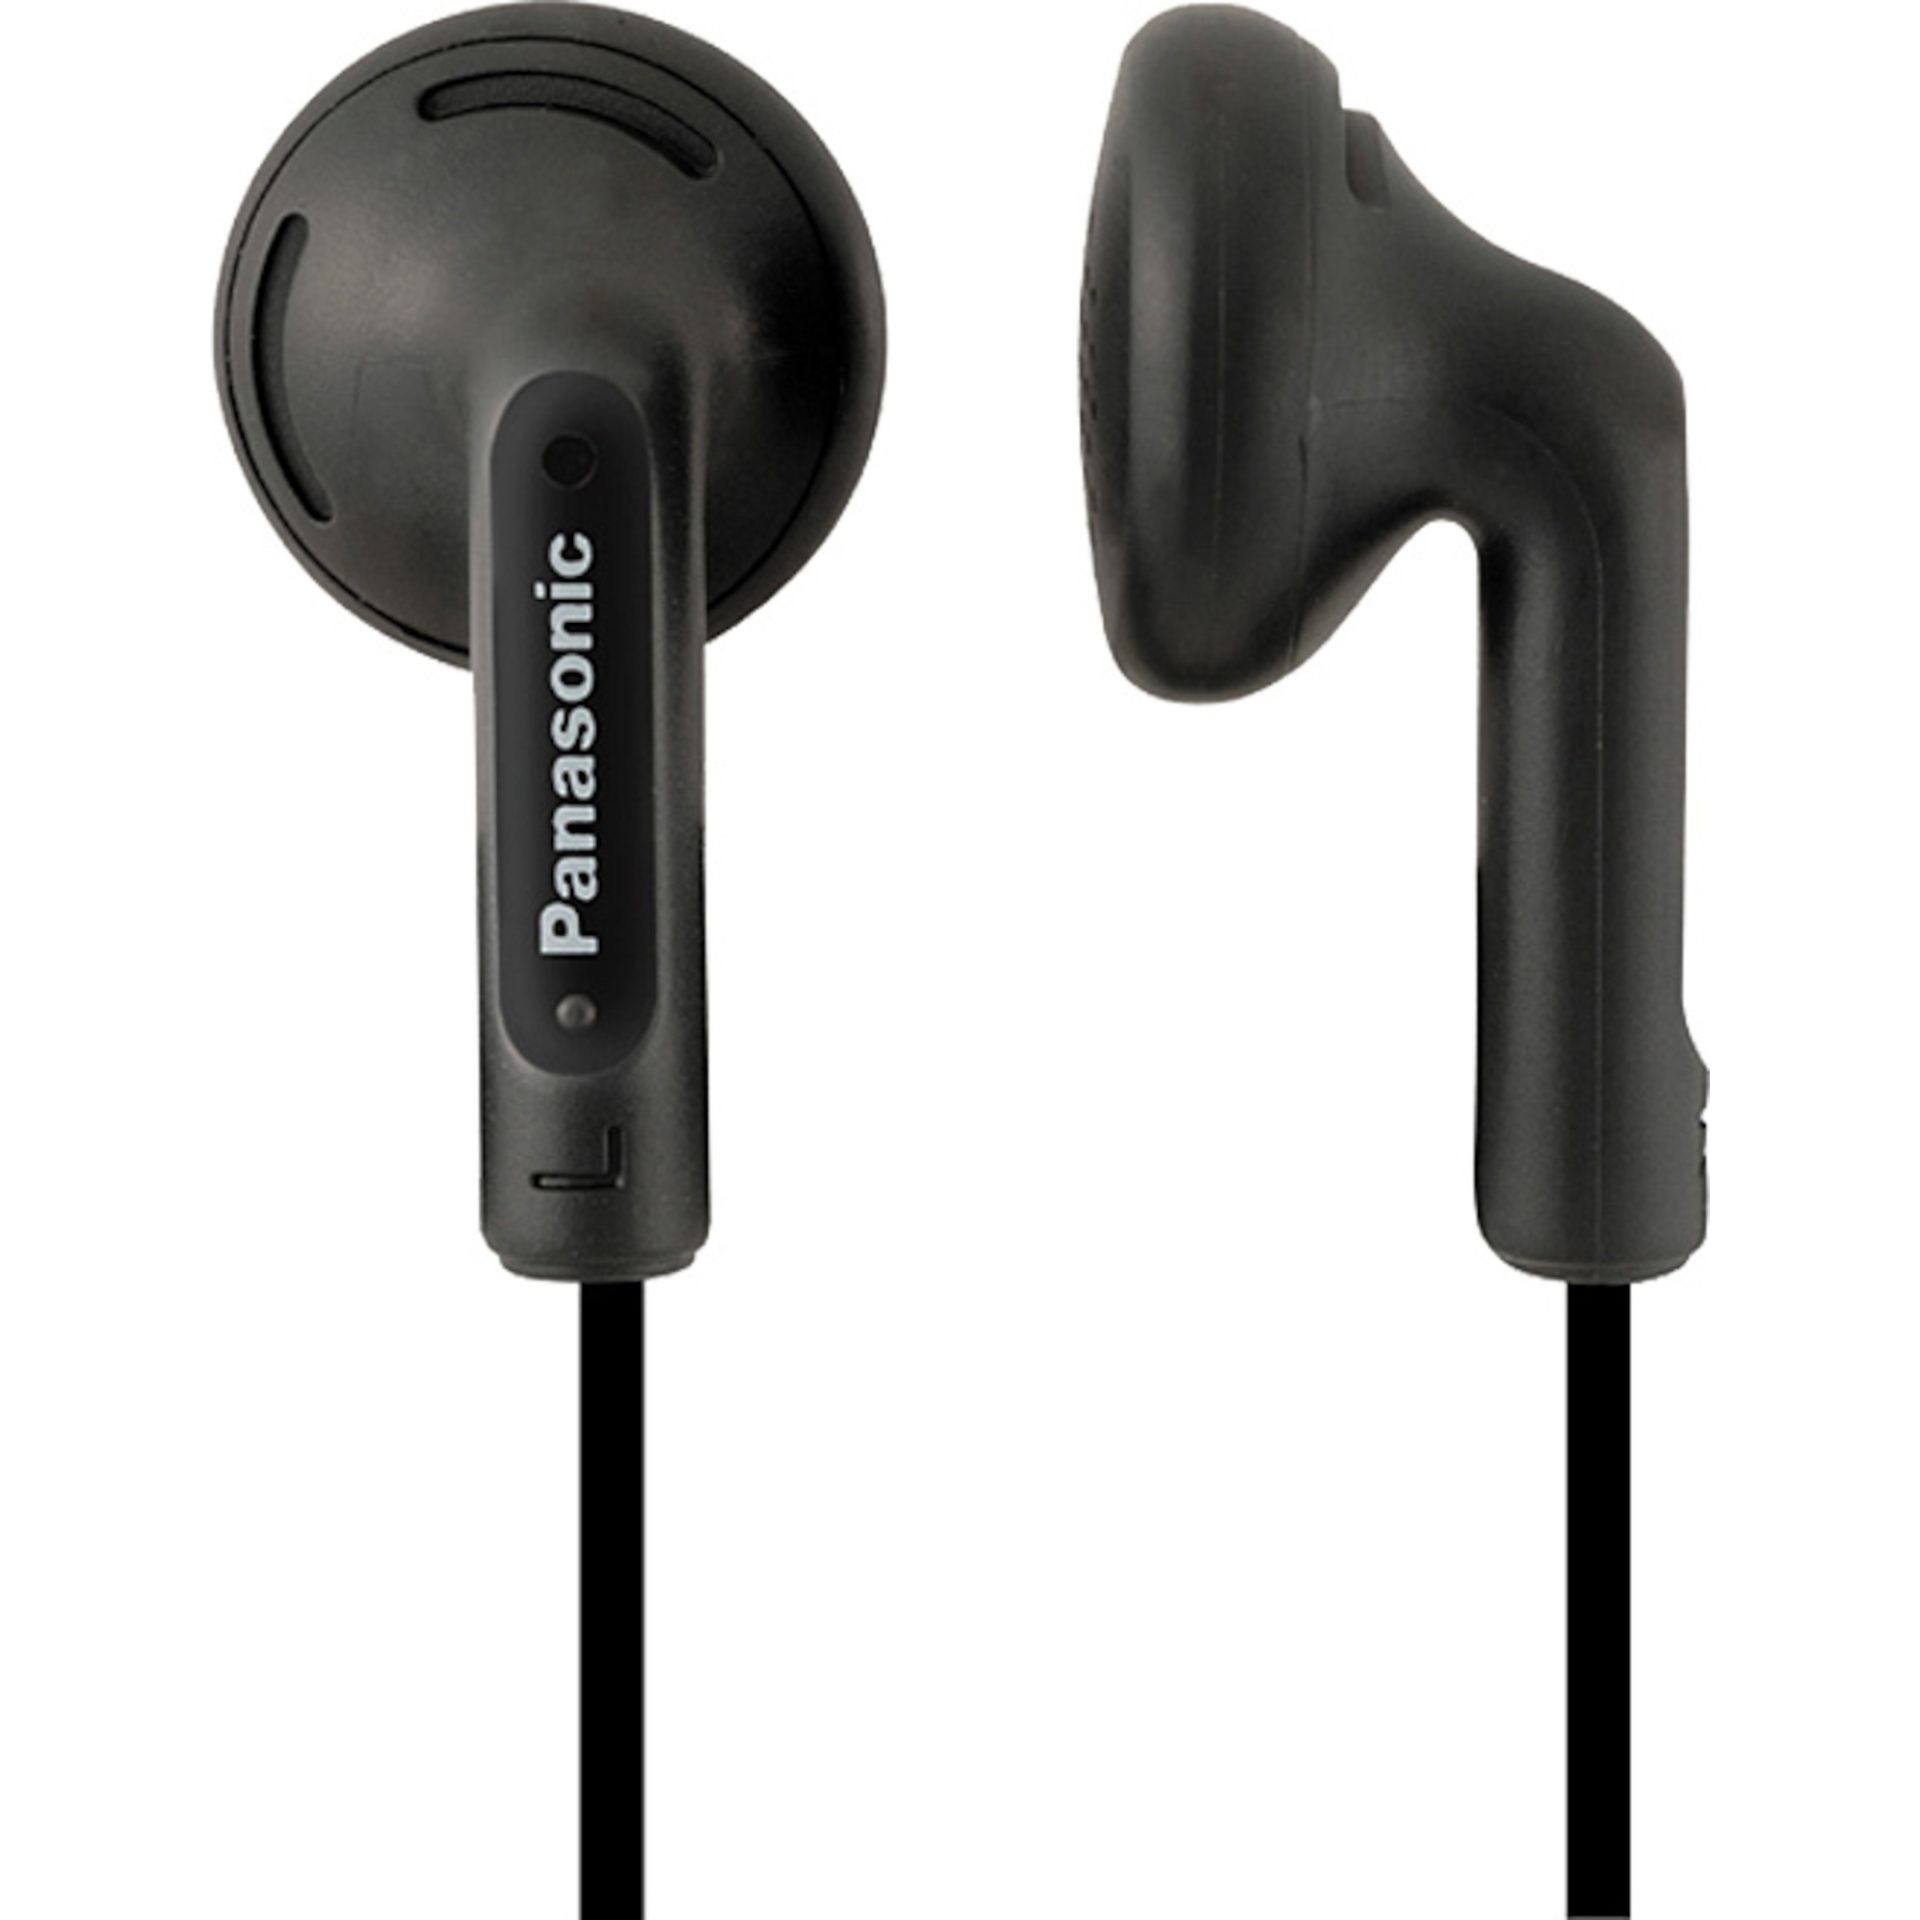 Panasonic RP-HV104 stereo kabelová sluchátka do uší (14,8 mm měnič, neodymový magnet, kabel 1,2 m, 20 Hz - 20 kHz), černá